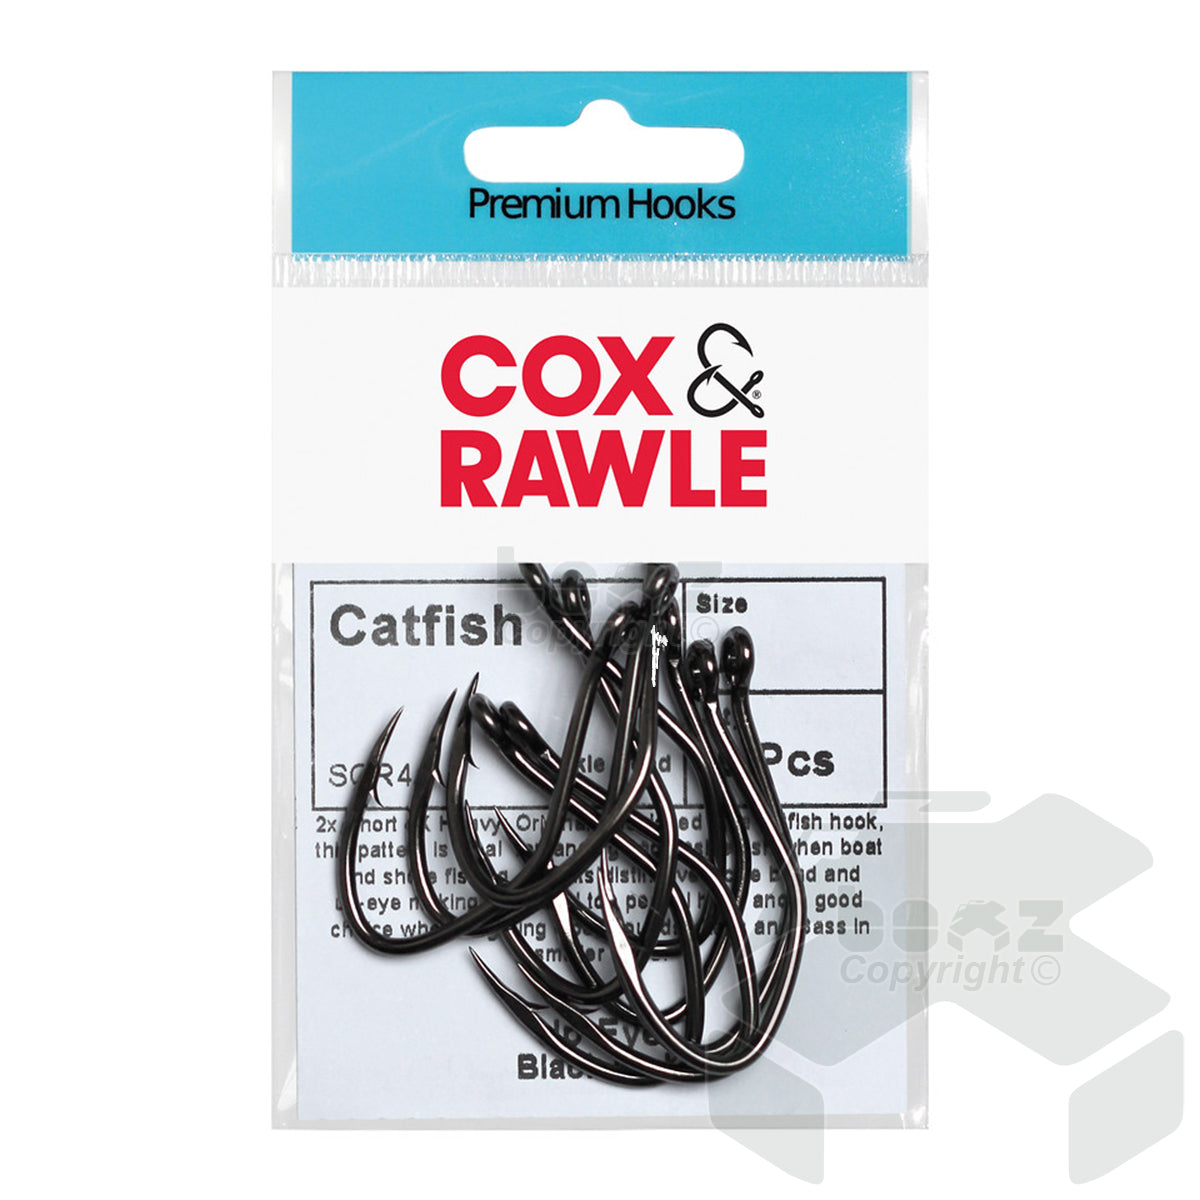 Cox & Rawle Specimen Catfish Hooks